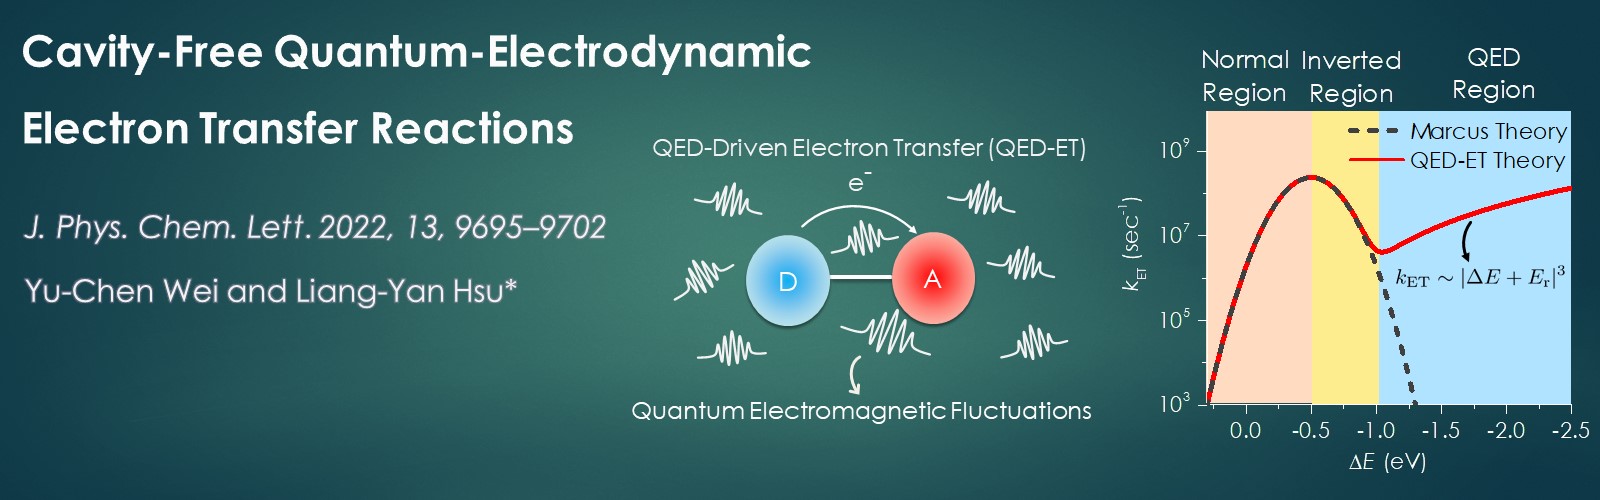 無空腔量子電動效應驅動電子轉移反應